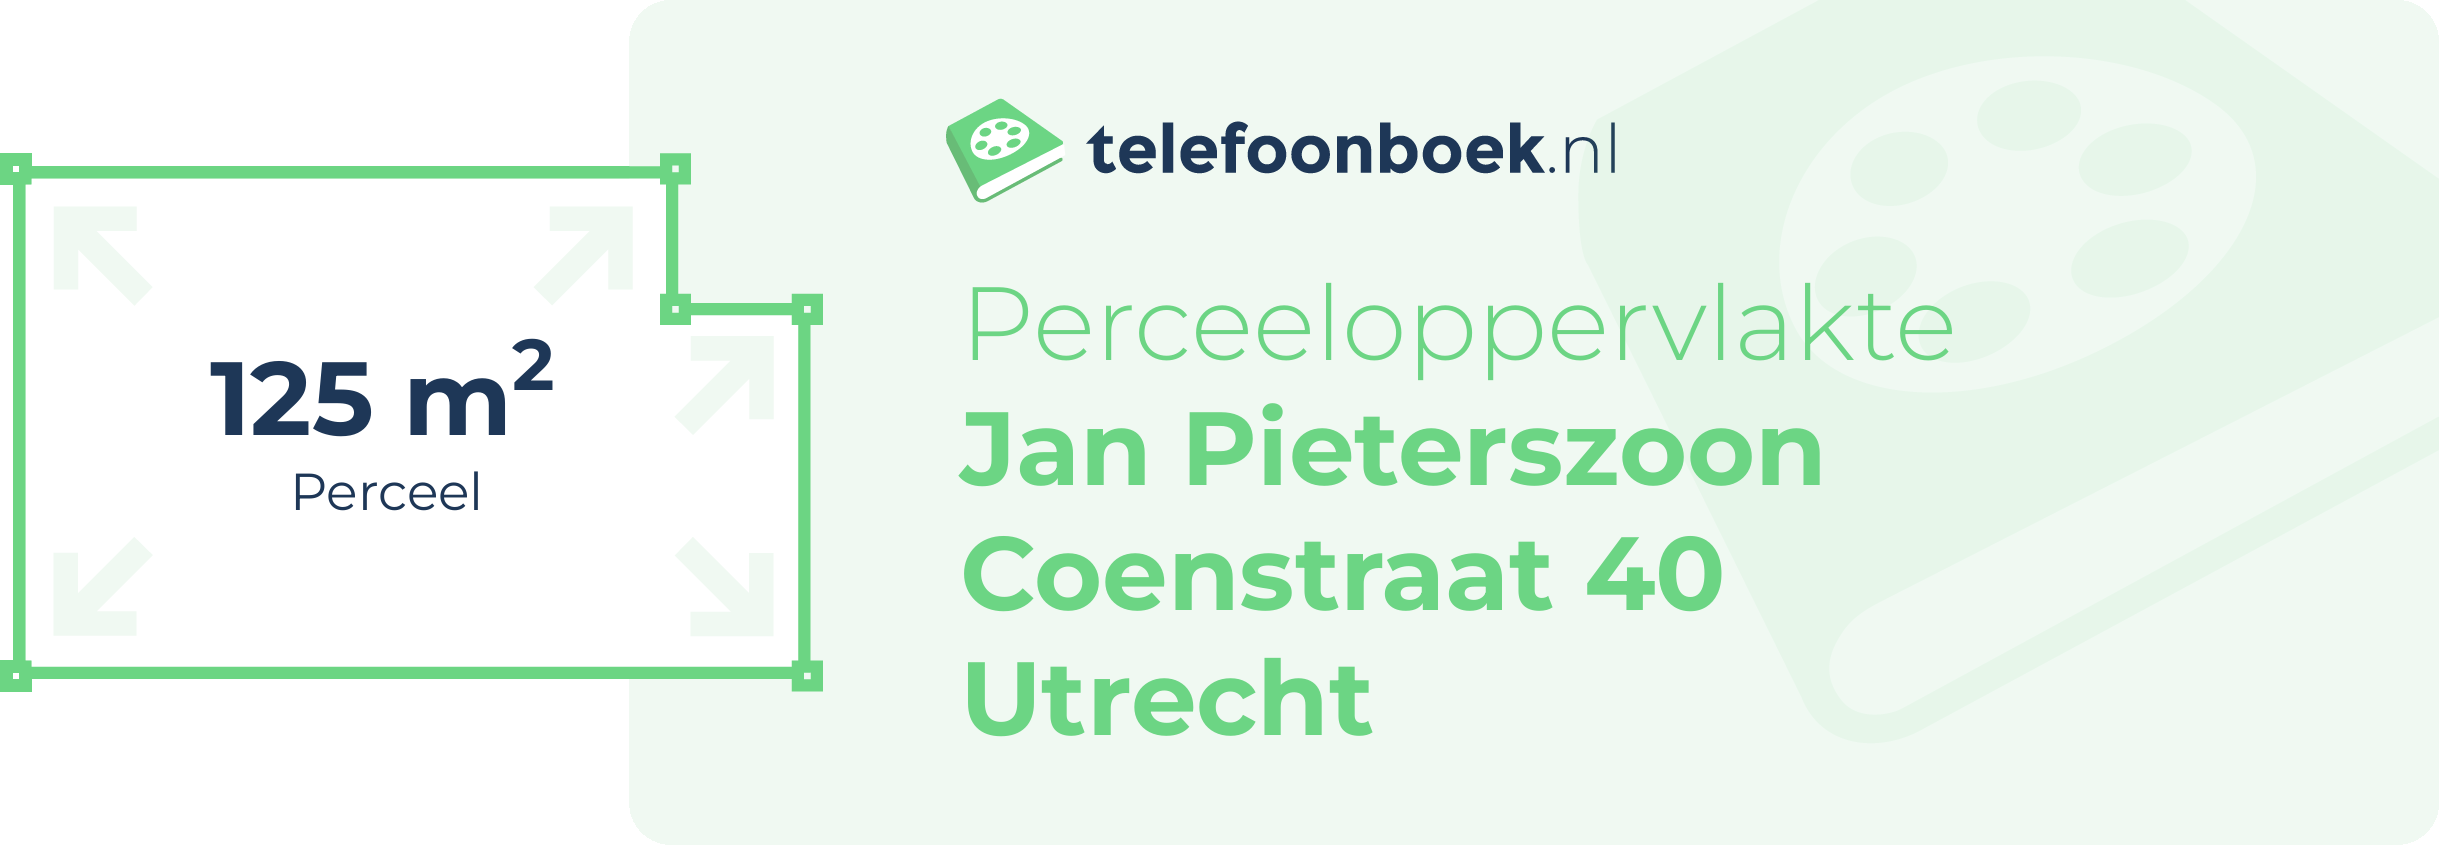 Perceeloppervlakte Jan Pieterszoon Coenstraat 40 Utrecht